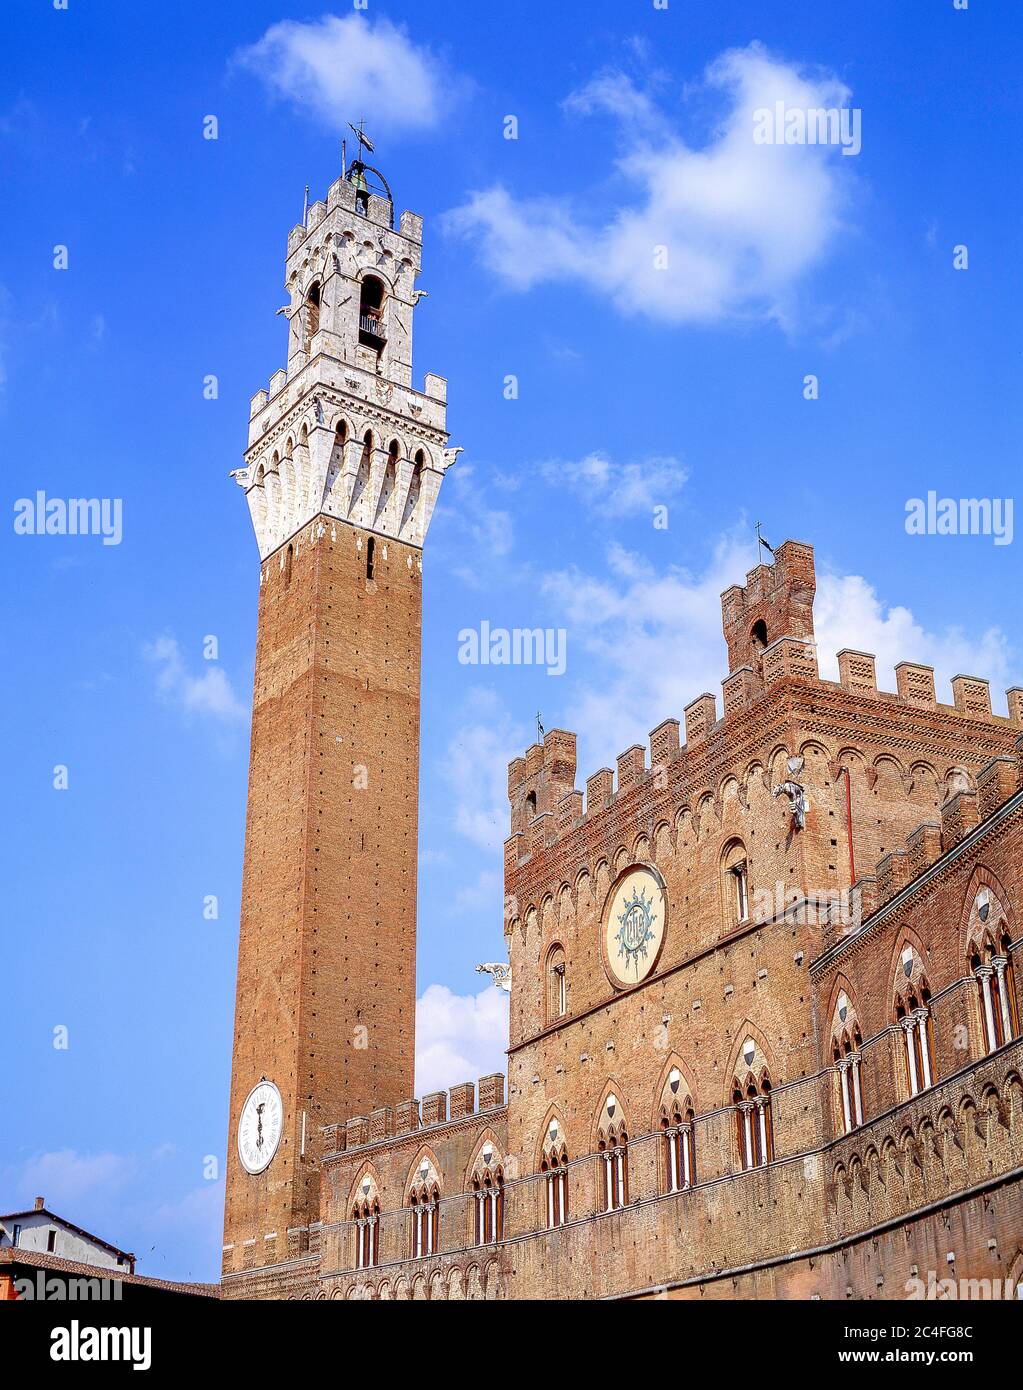 Blick auf den Palazzo Pubblico und Torre del Mangia (Mangia-Turm), Piazza Del Campo (Campo-Platz), Siena (Siena), Toskana, Italien Stockfoto